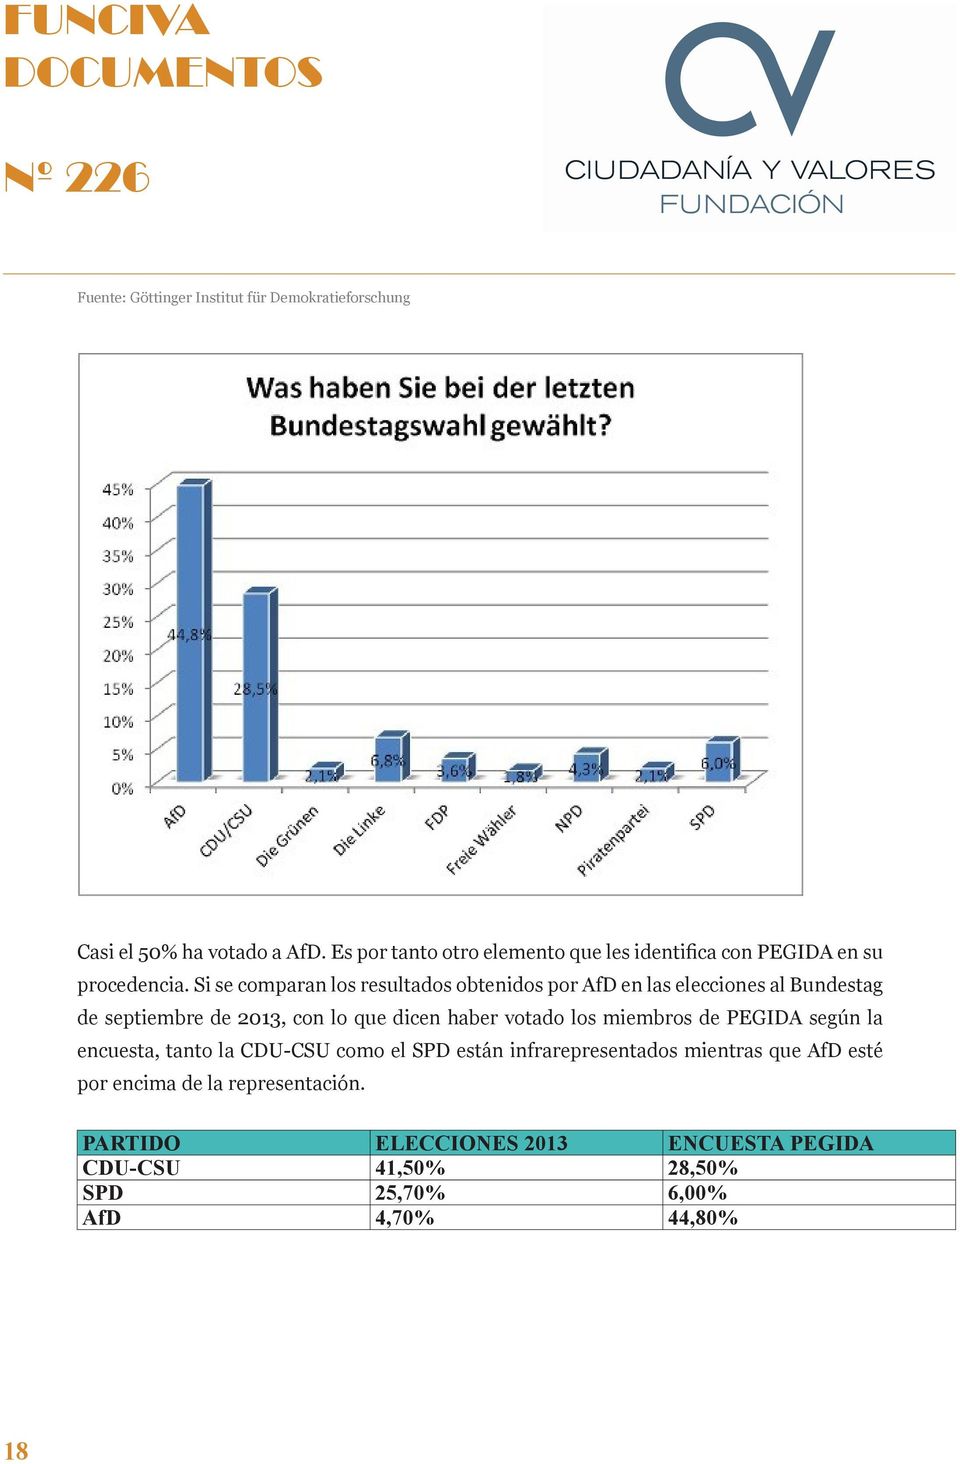 Si se comparan los resultados obtenidos por AfD en las elecciones al Bundestag de septiembre de 2013, con lo que dicen haber votado los